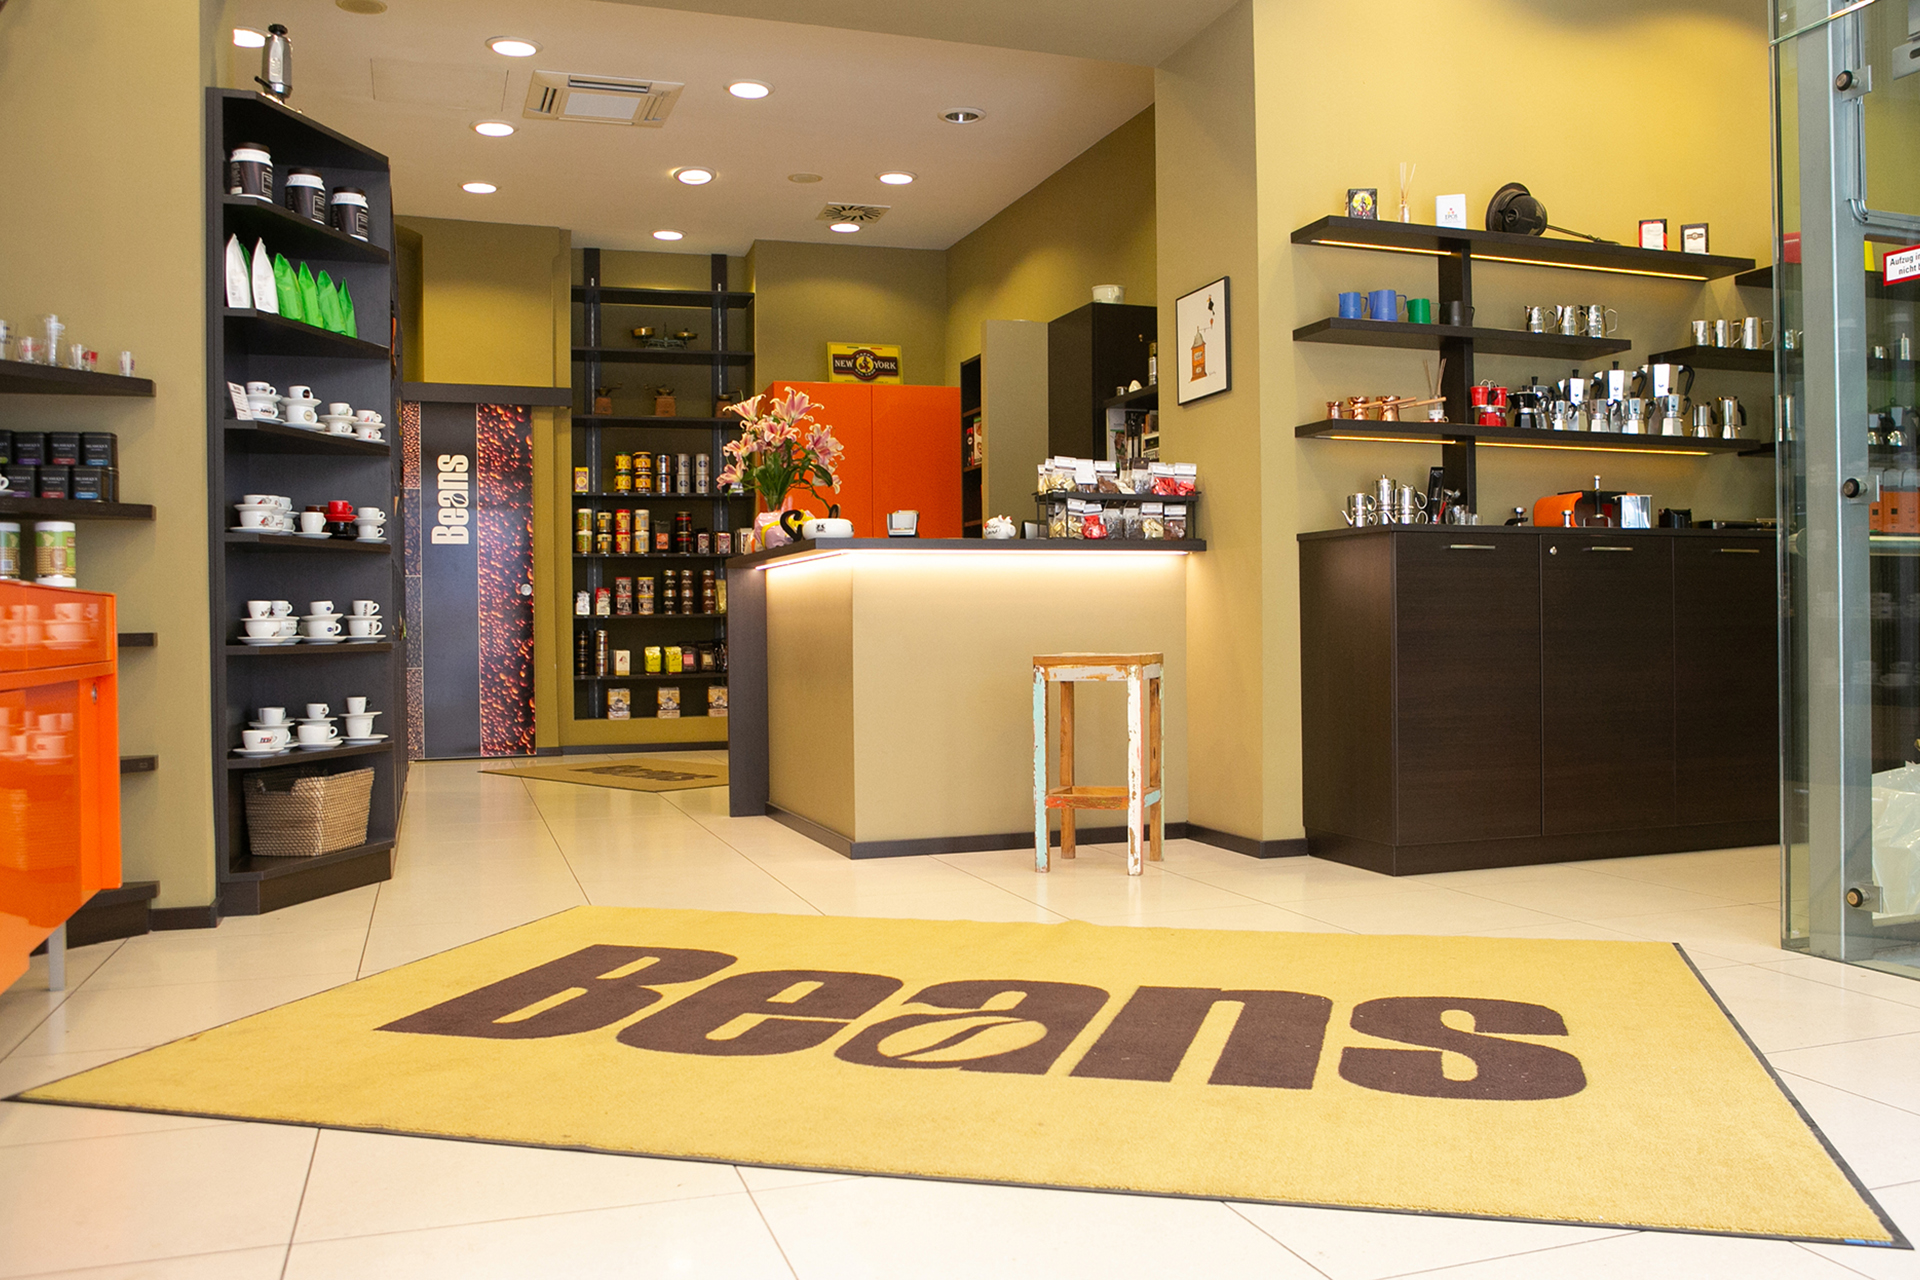 Beans Shop - Retail space